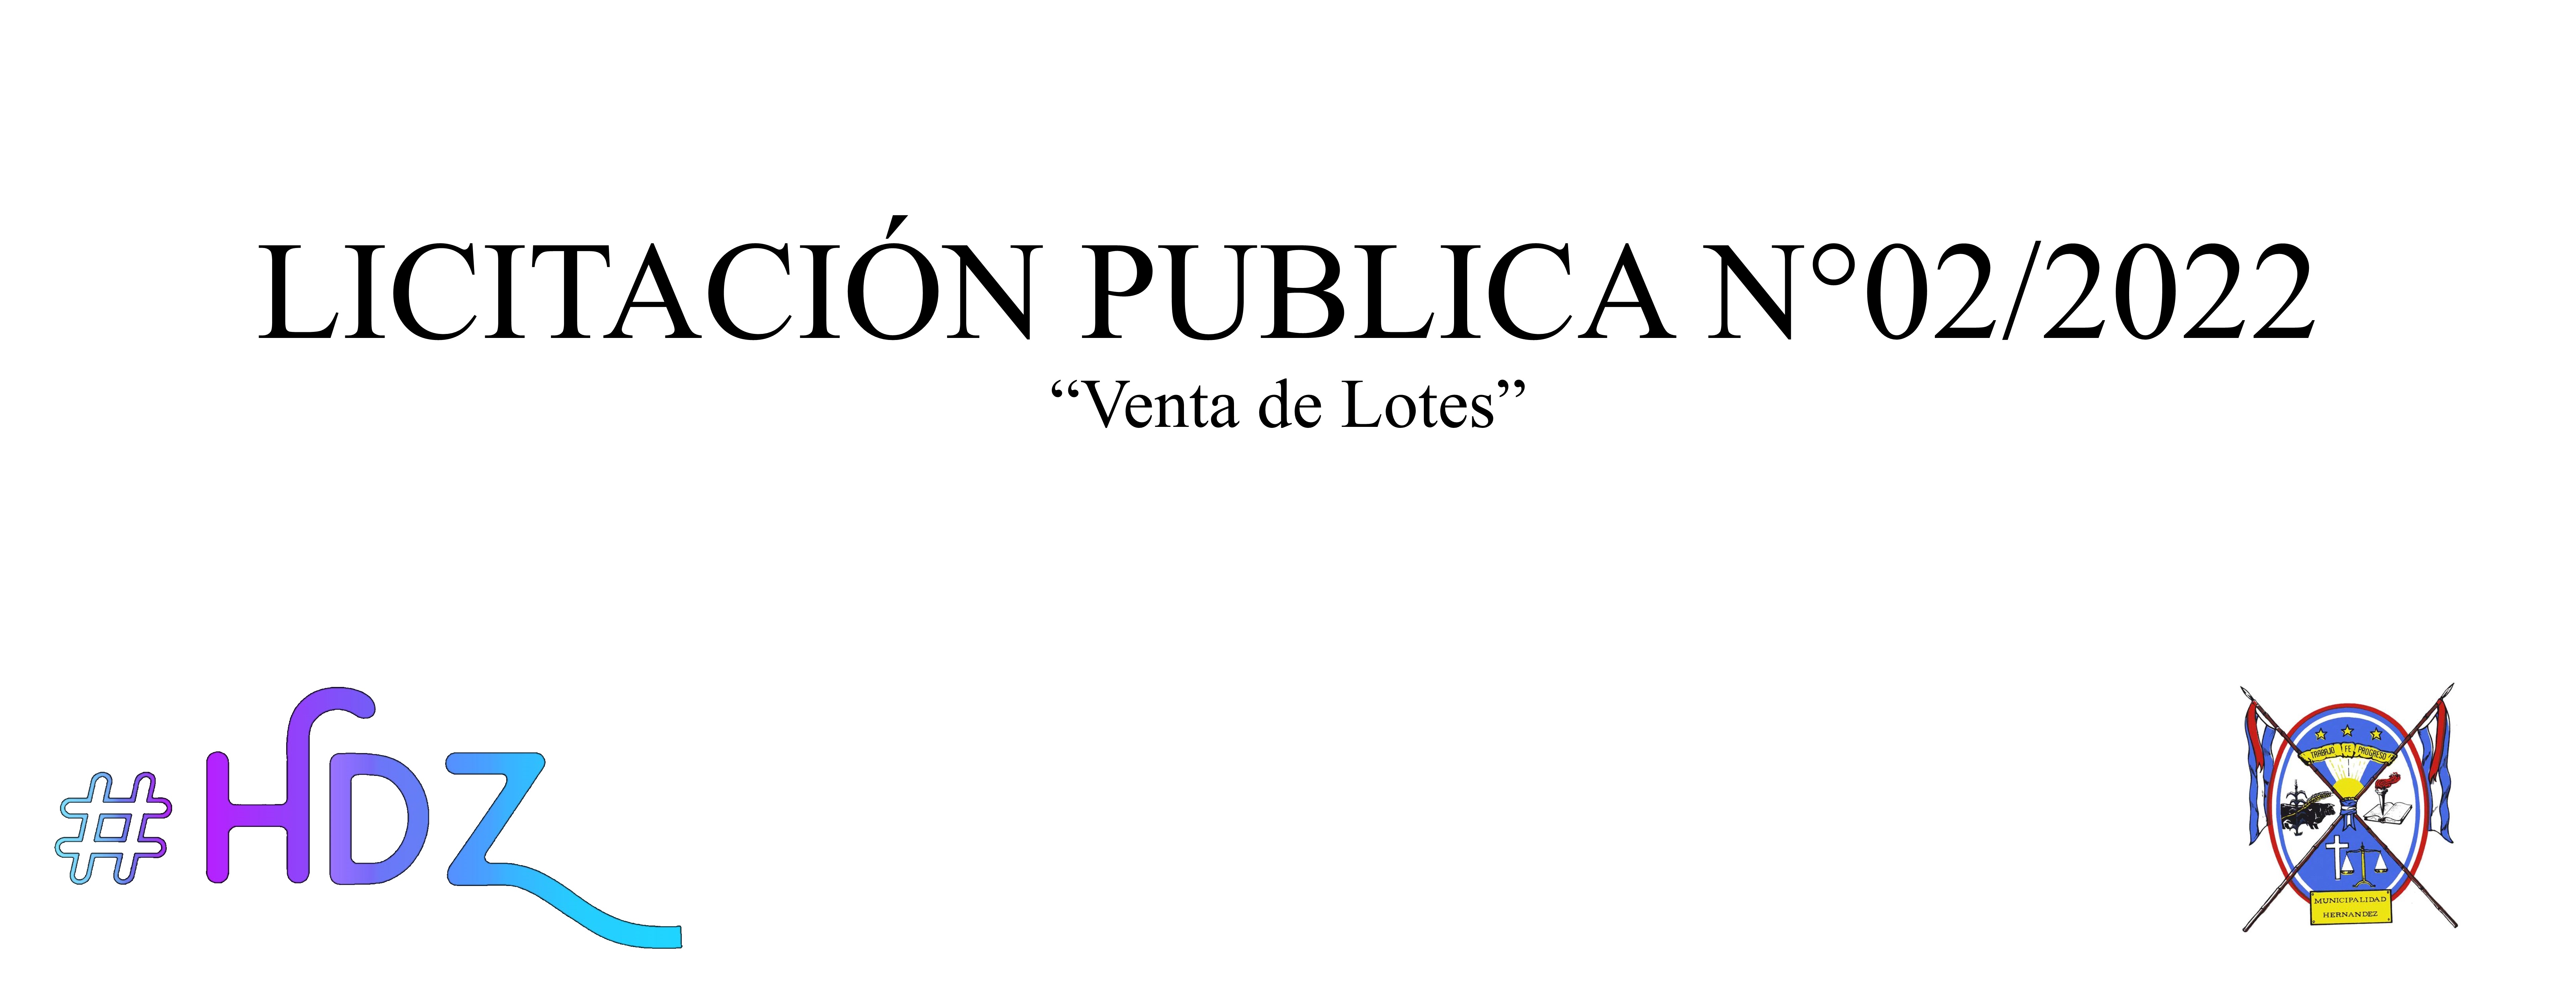 Imagen de LICITACIÓN PÚBLICA N° 2/2022 - VENTA DE LOTES